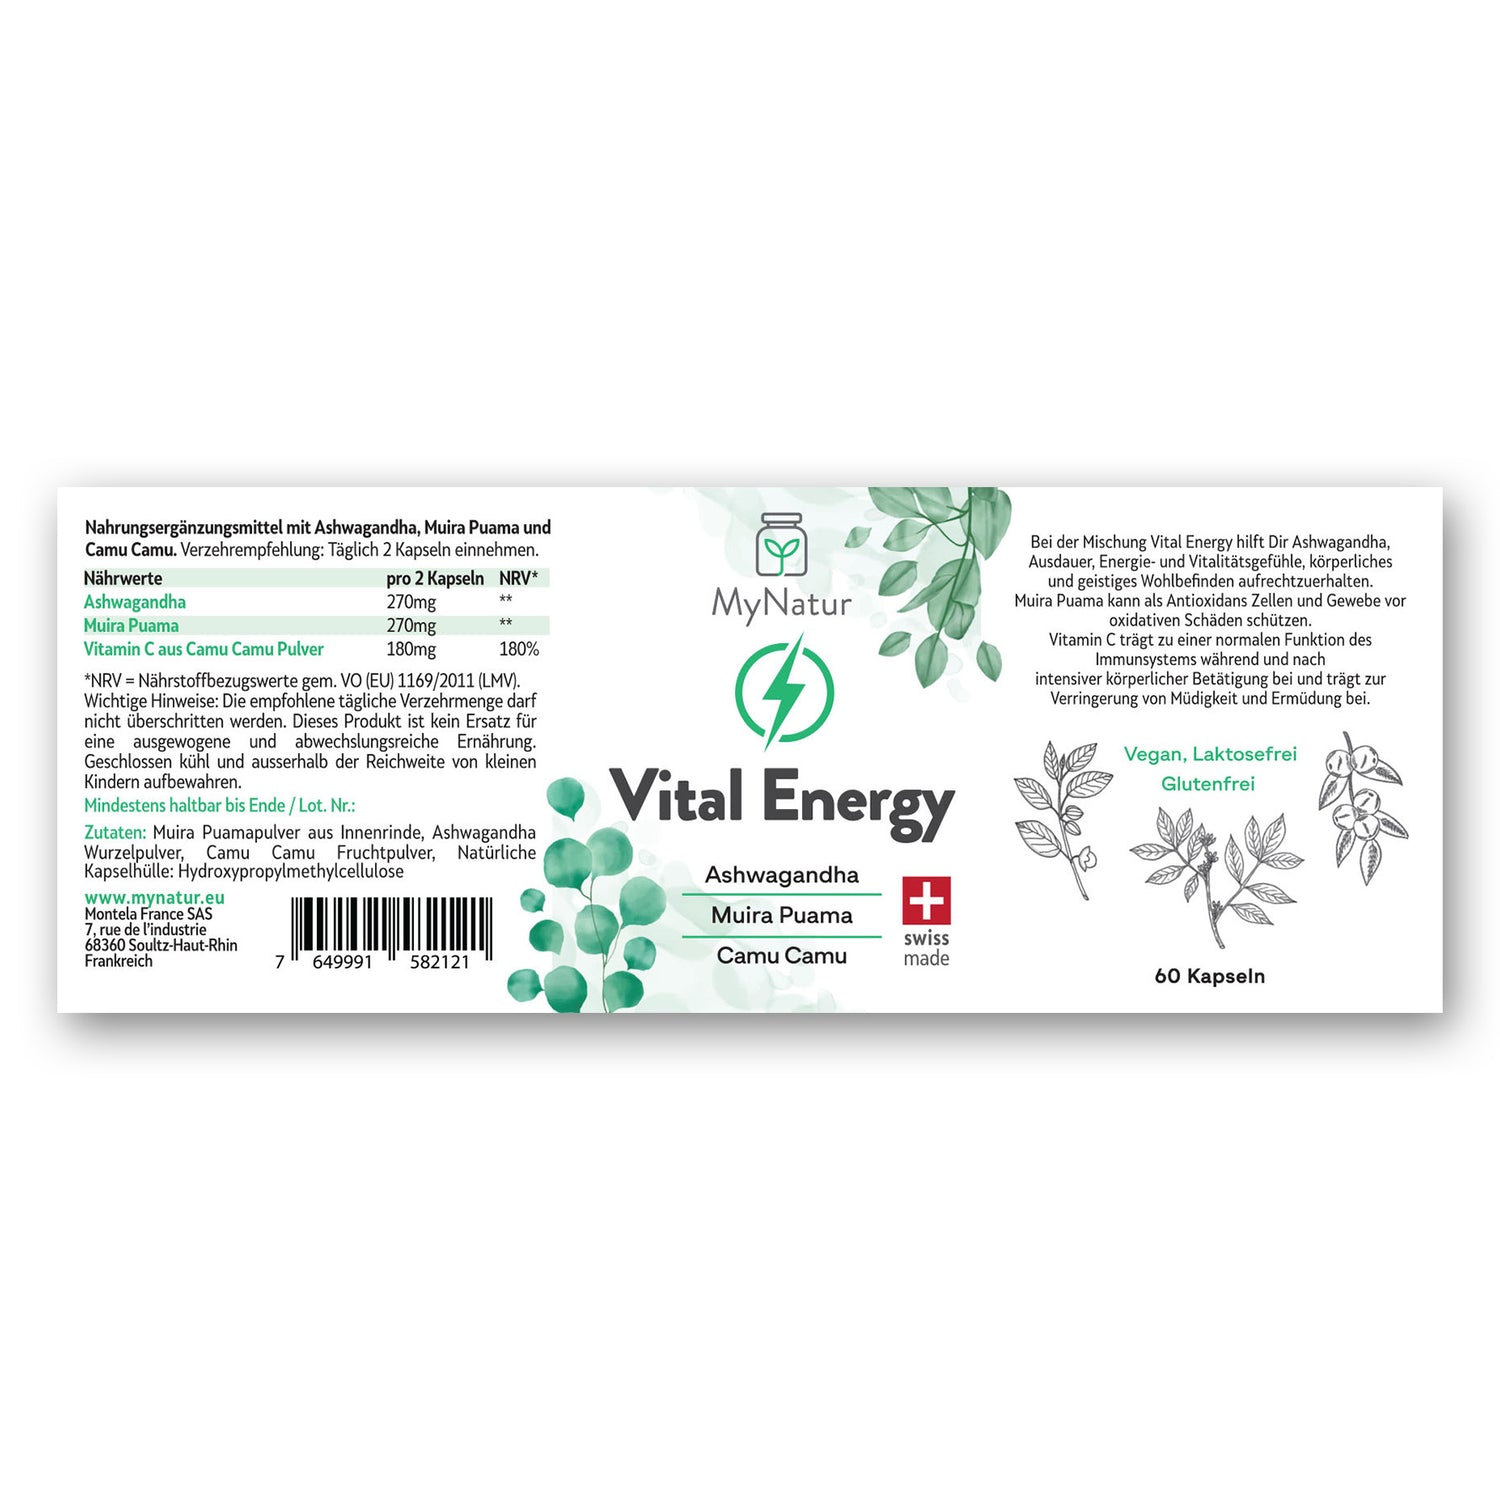 Vital Energy Kapseln MyNatur mit Ashwagandha Muira Puama Camu camu, Swiss Made